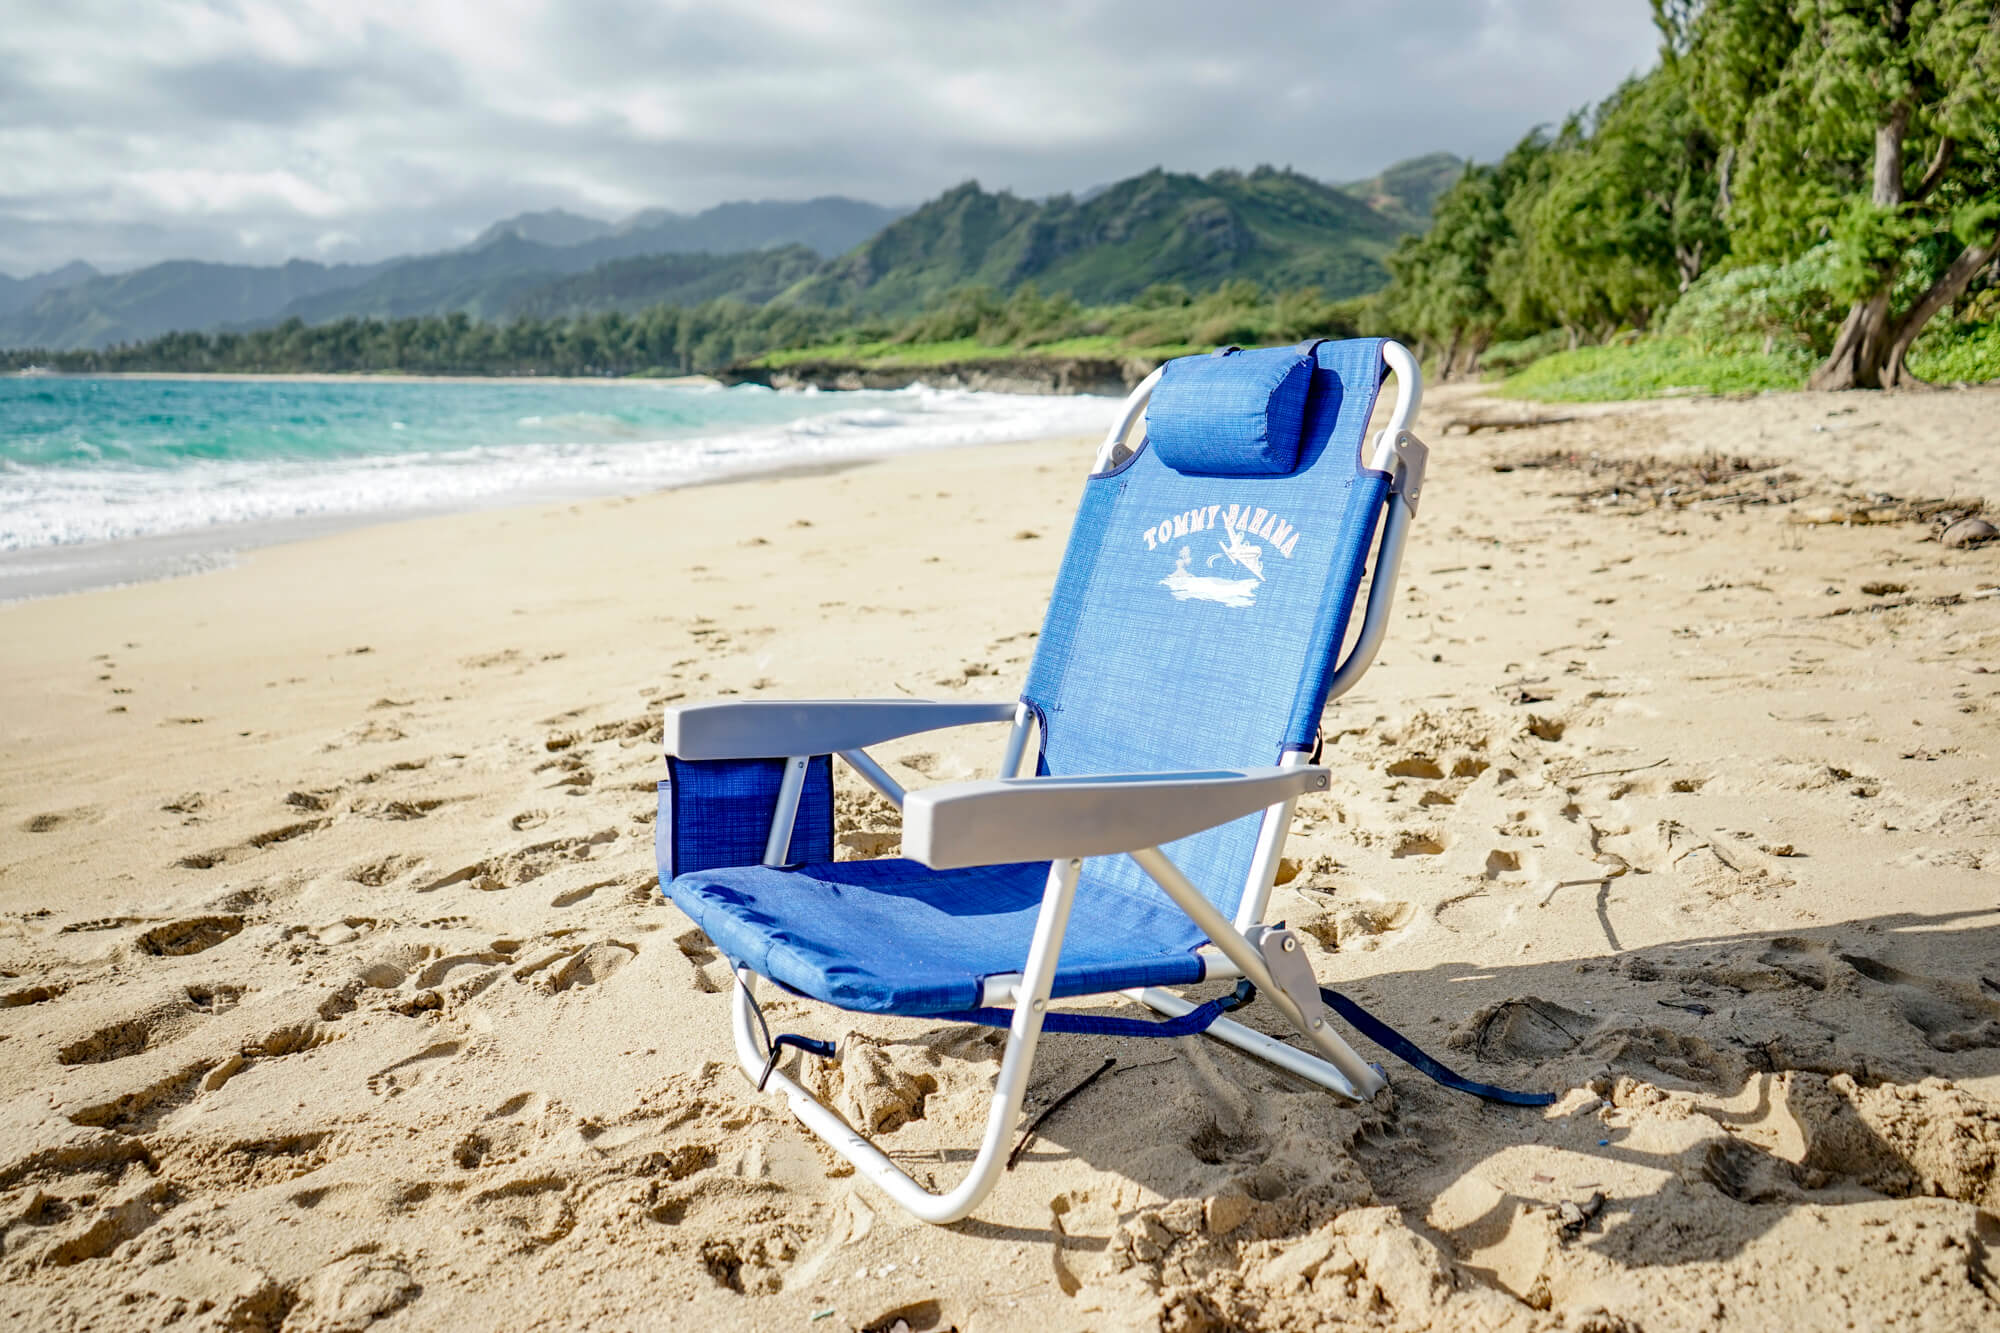 oahu beach chair rentals north shore oahu near laie pcc